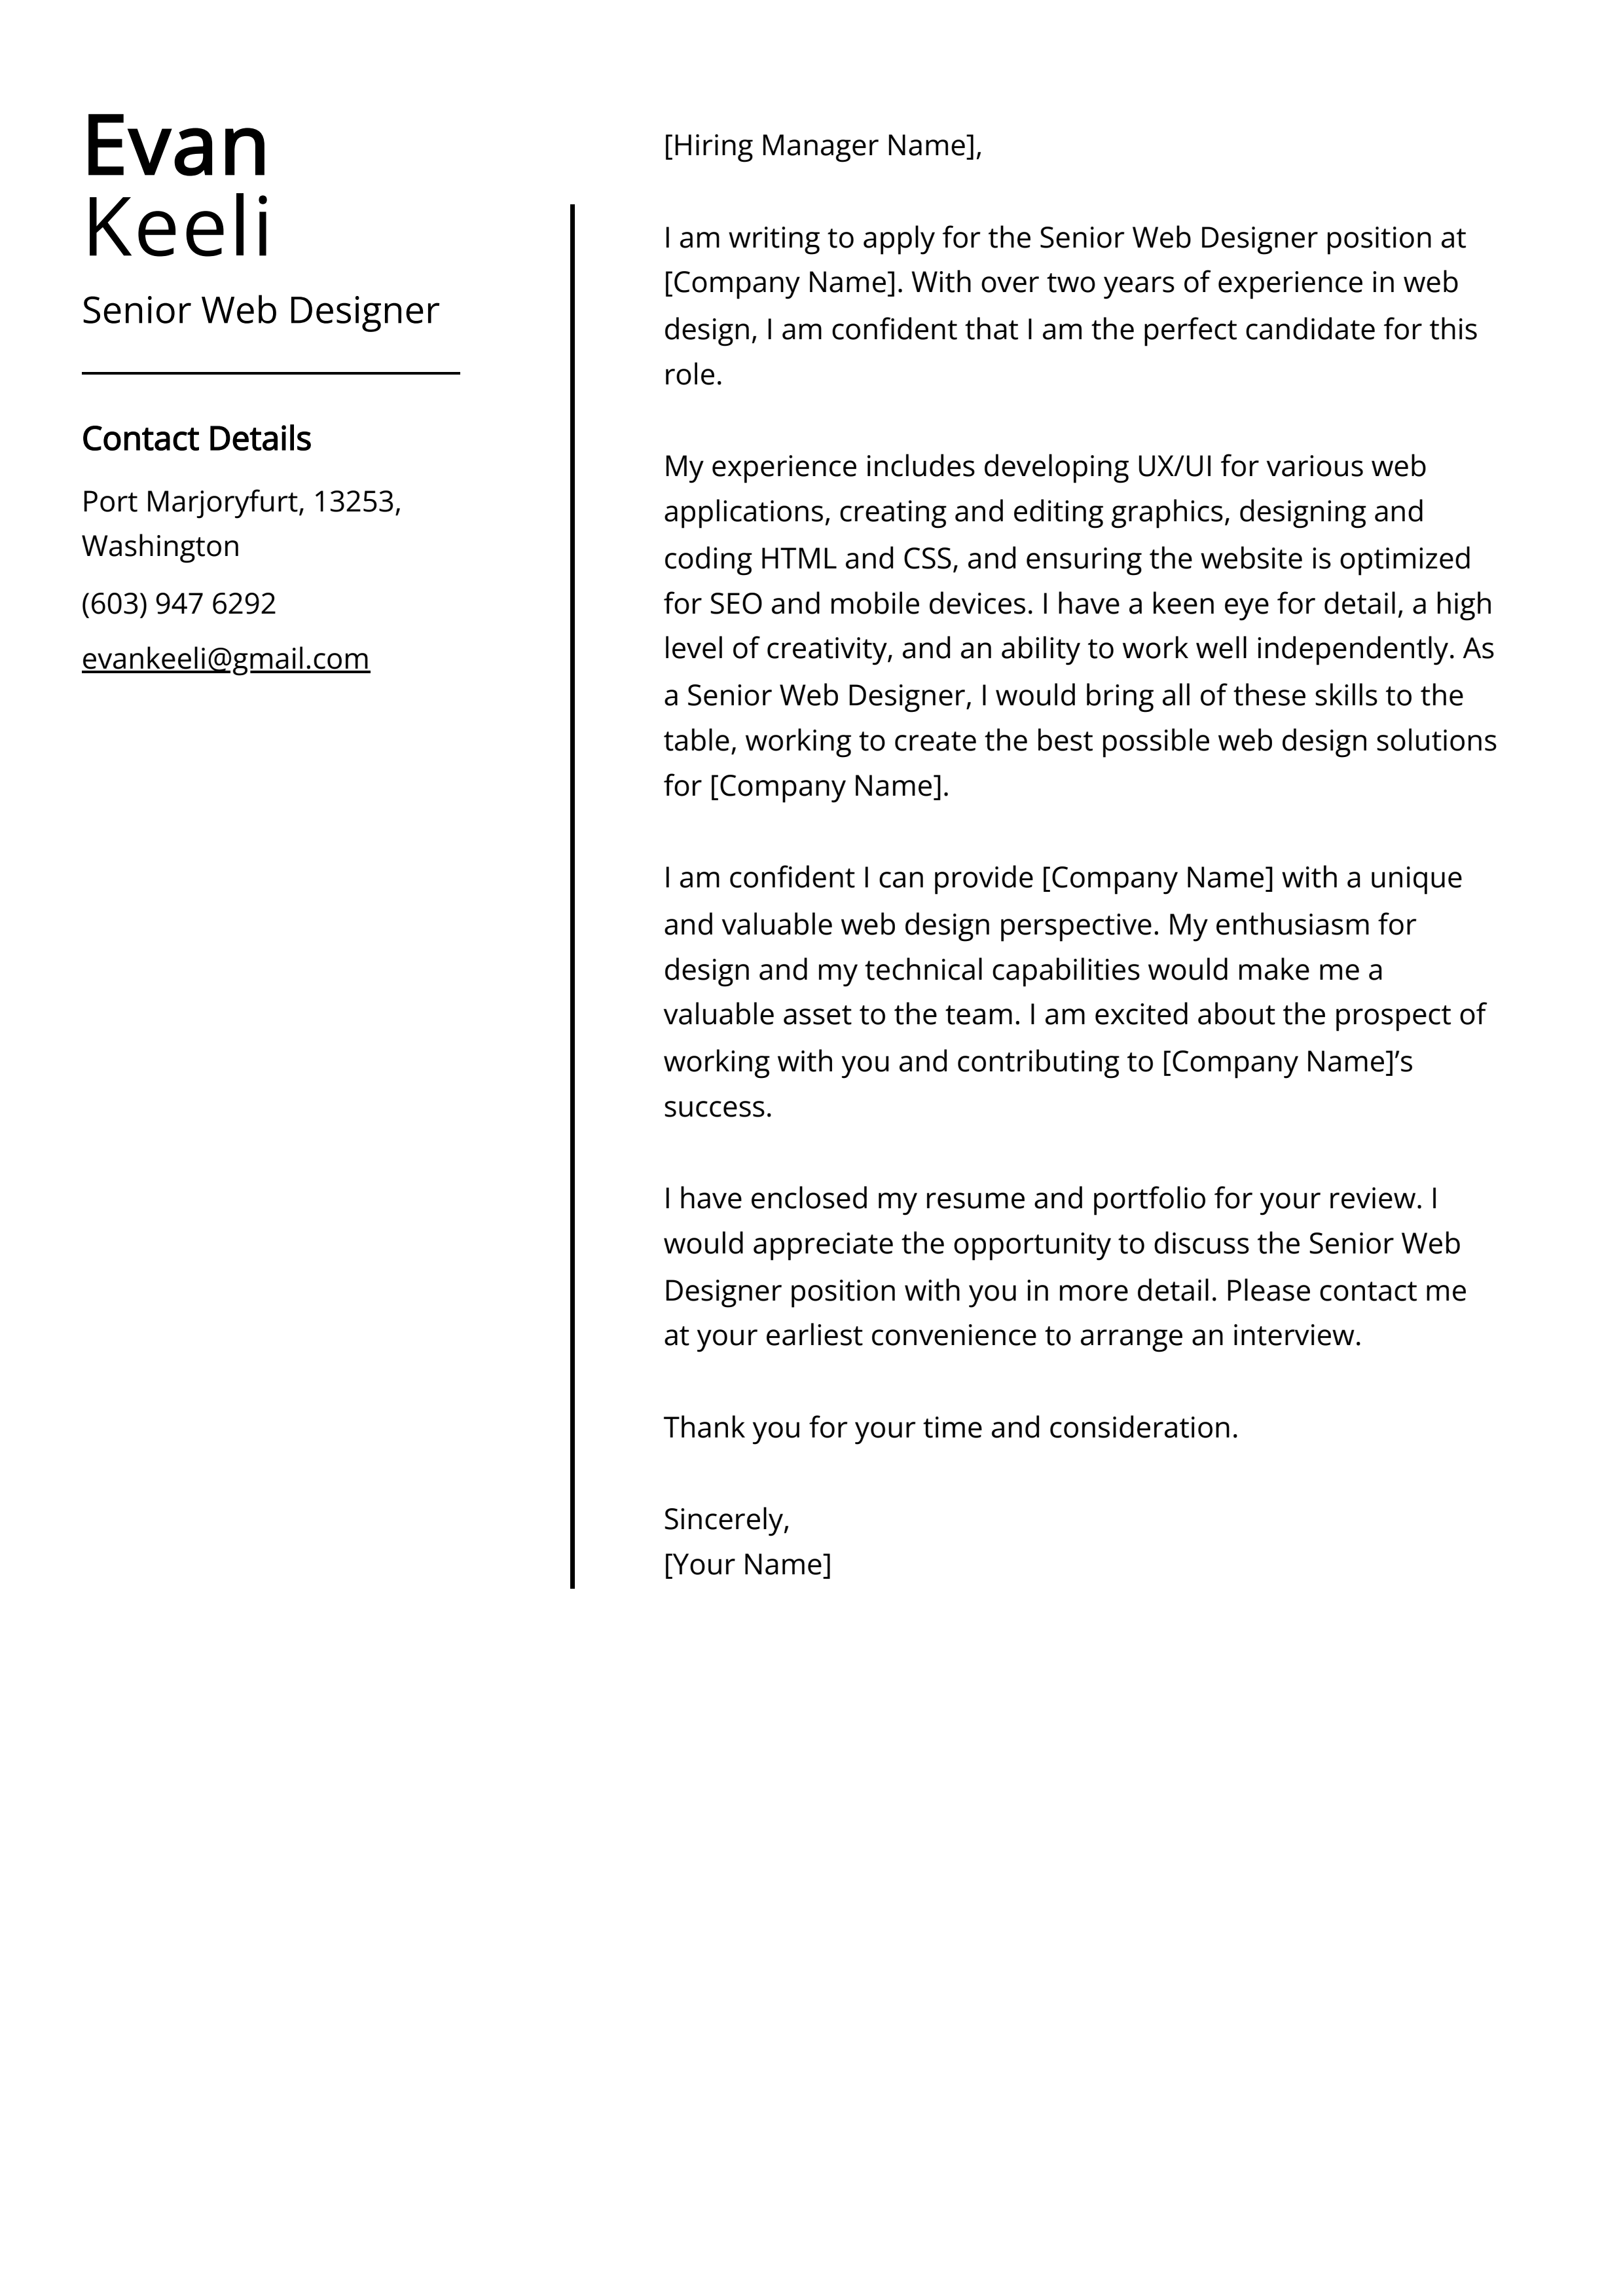 Senior Web Designer Cover Letter Example